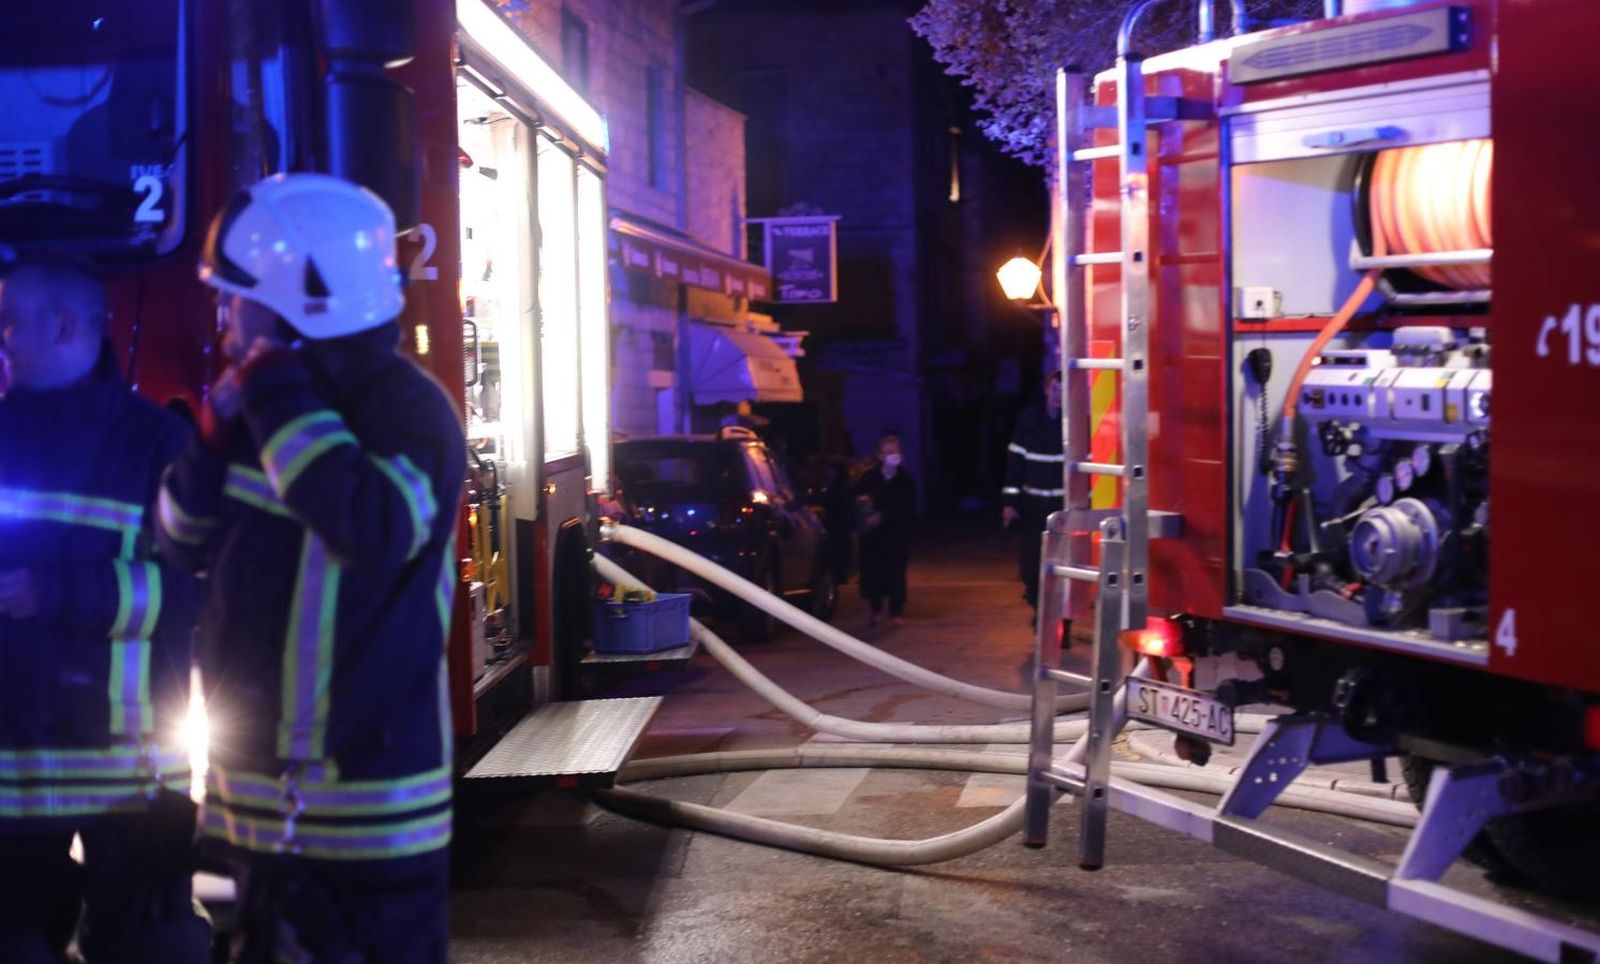 19.04.2021., Trogir - U samom sredistu starog dijela Trogira izbio pozar u potkrovlju kuce. Svi rasplozivi vatrogasci su na terenu. 

Photo: Ivo Cagalj/PIXSELL